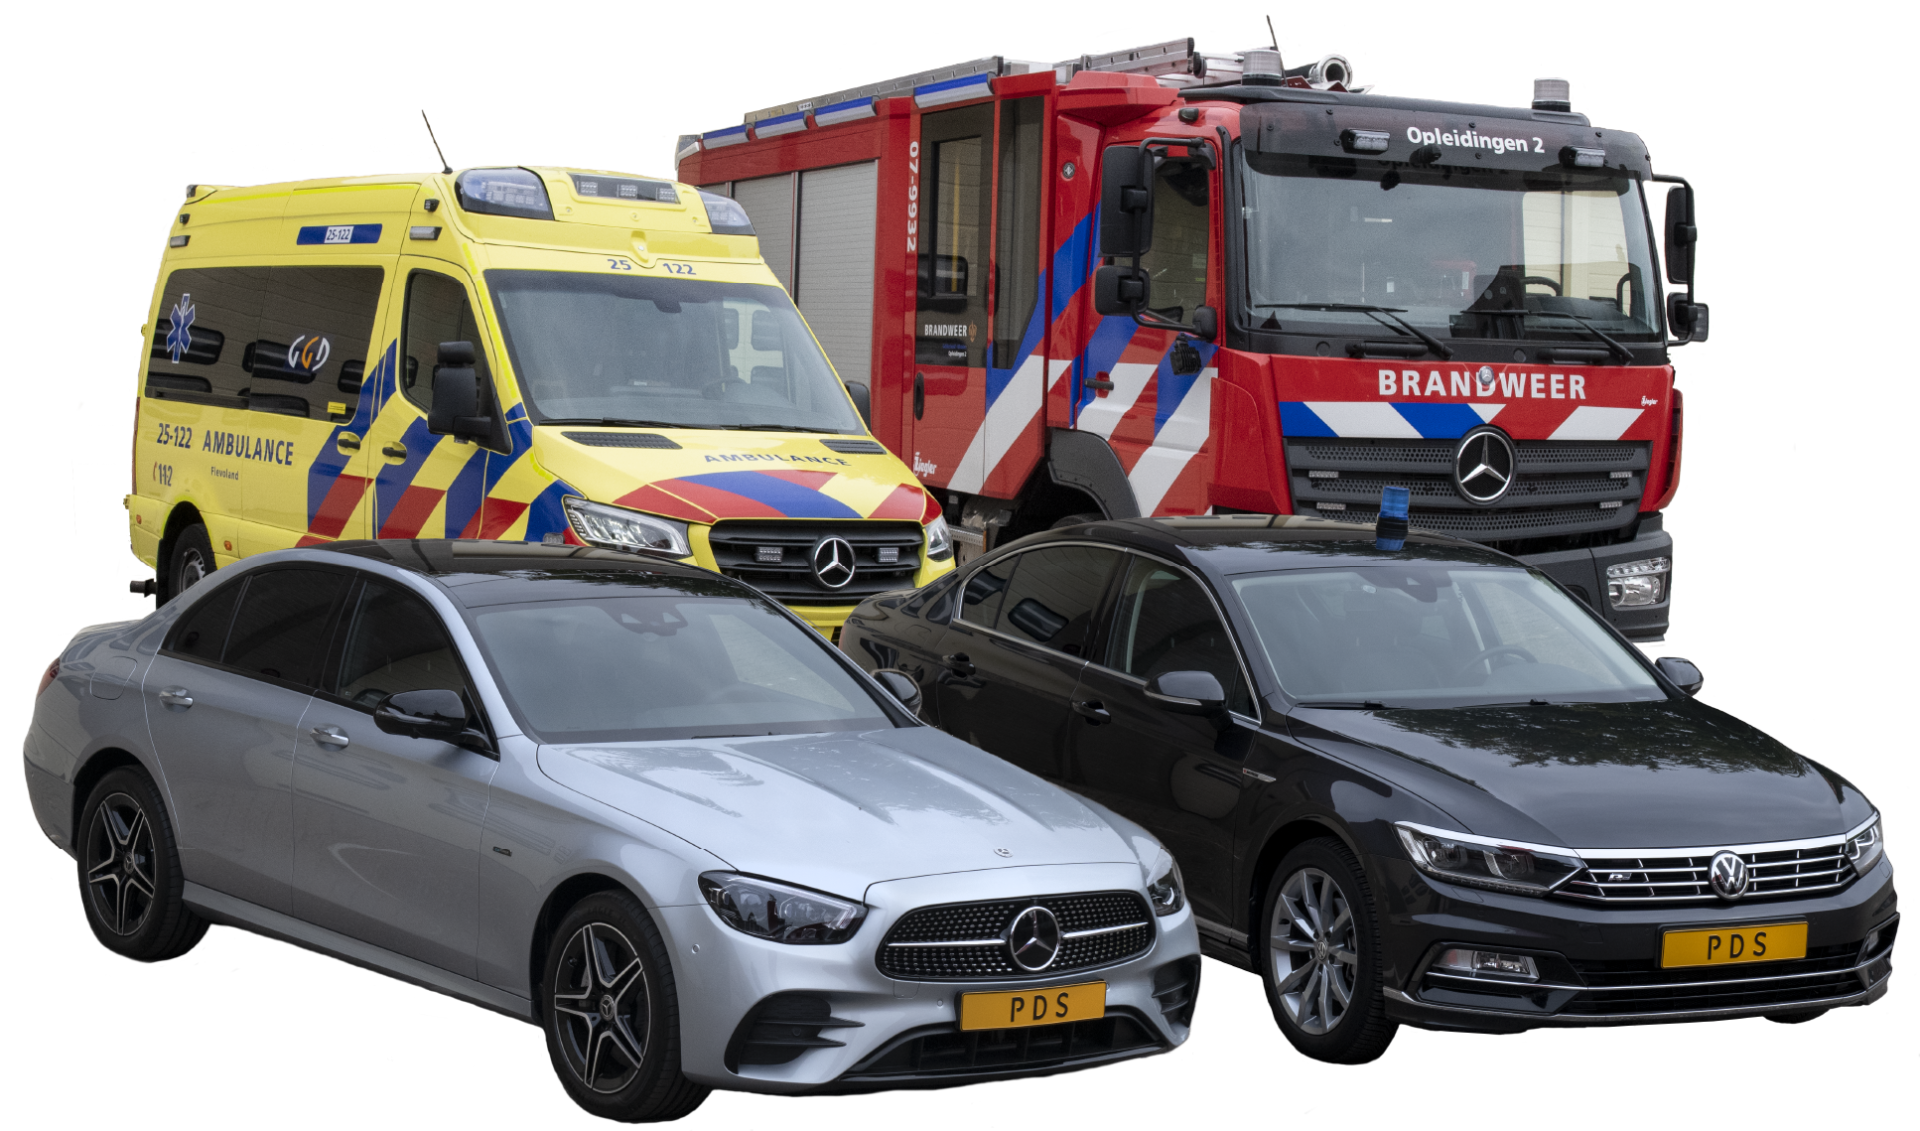 Brandweer, ambulance en luxe auto's op rij